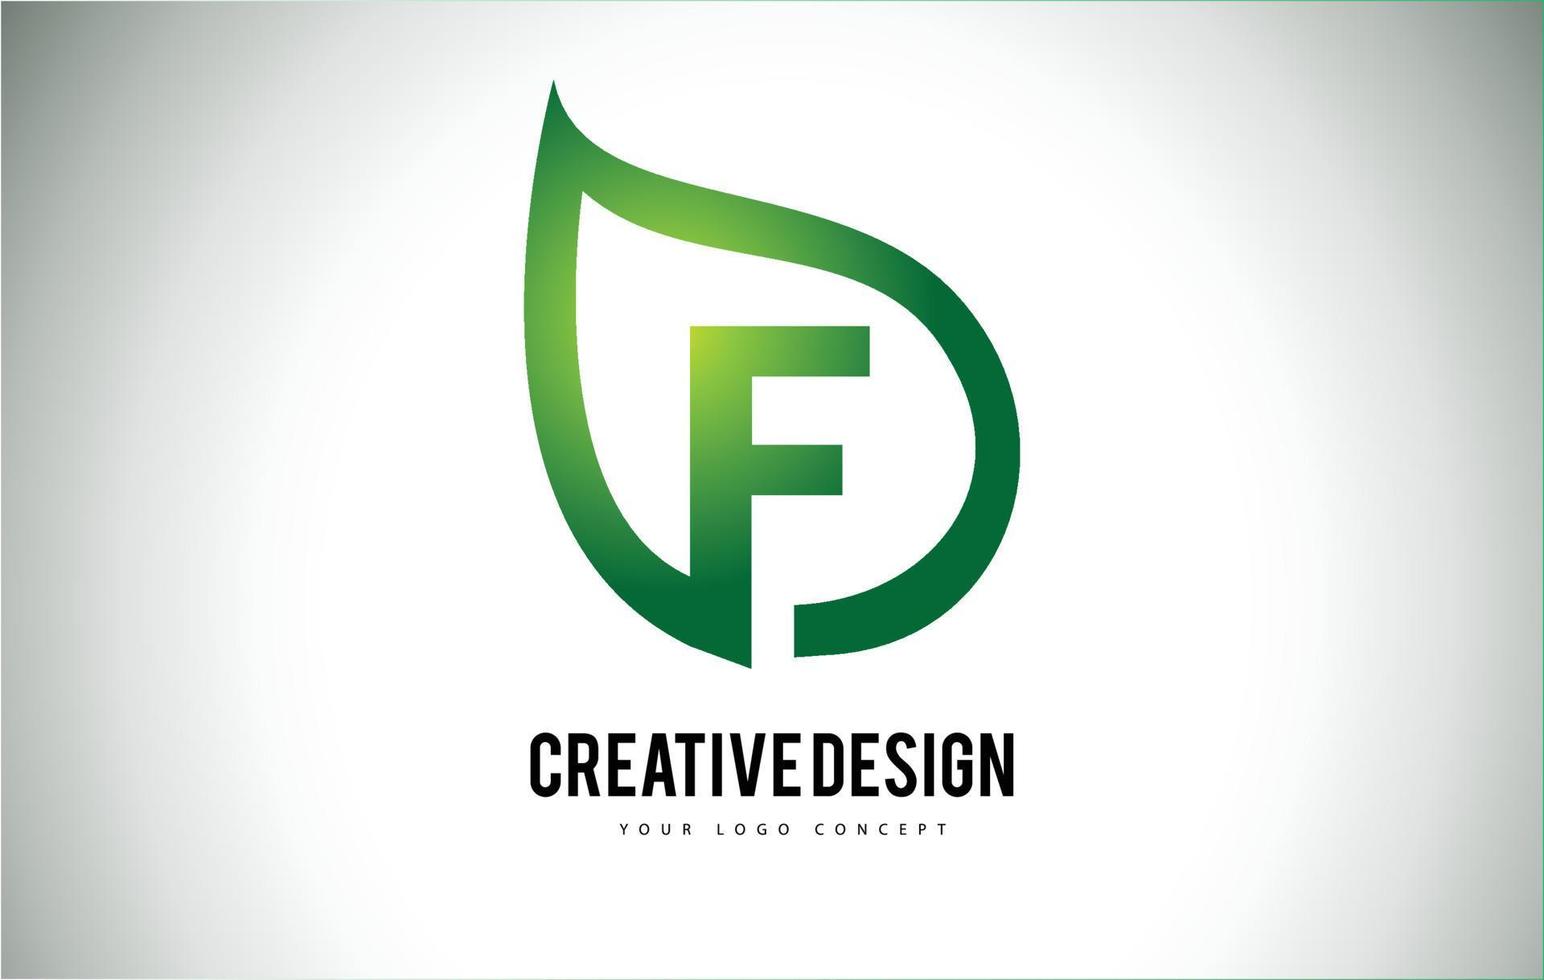 F Leaf Logo Letter Design with Green Leaf Outline vector